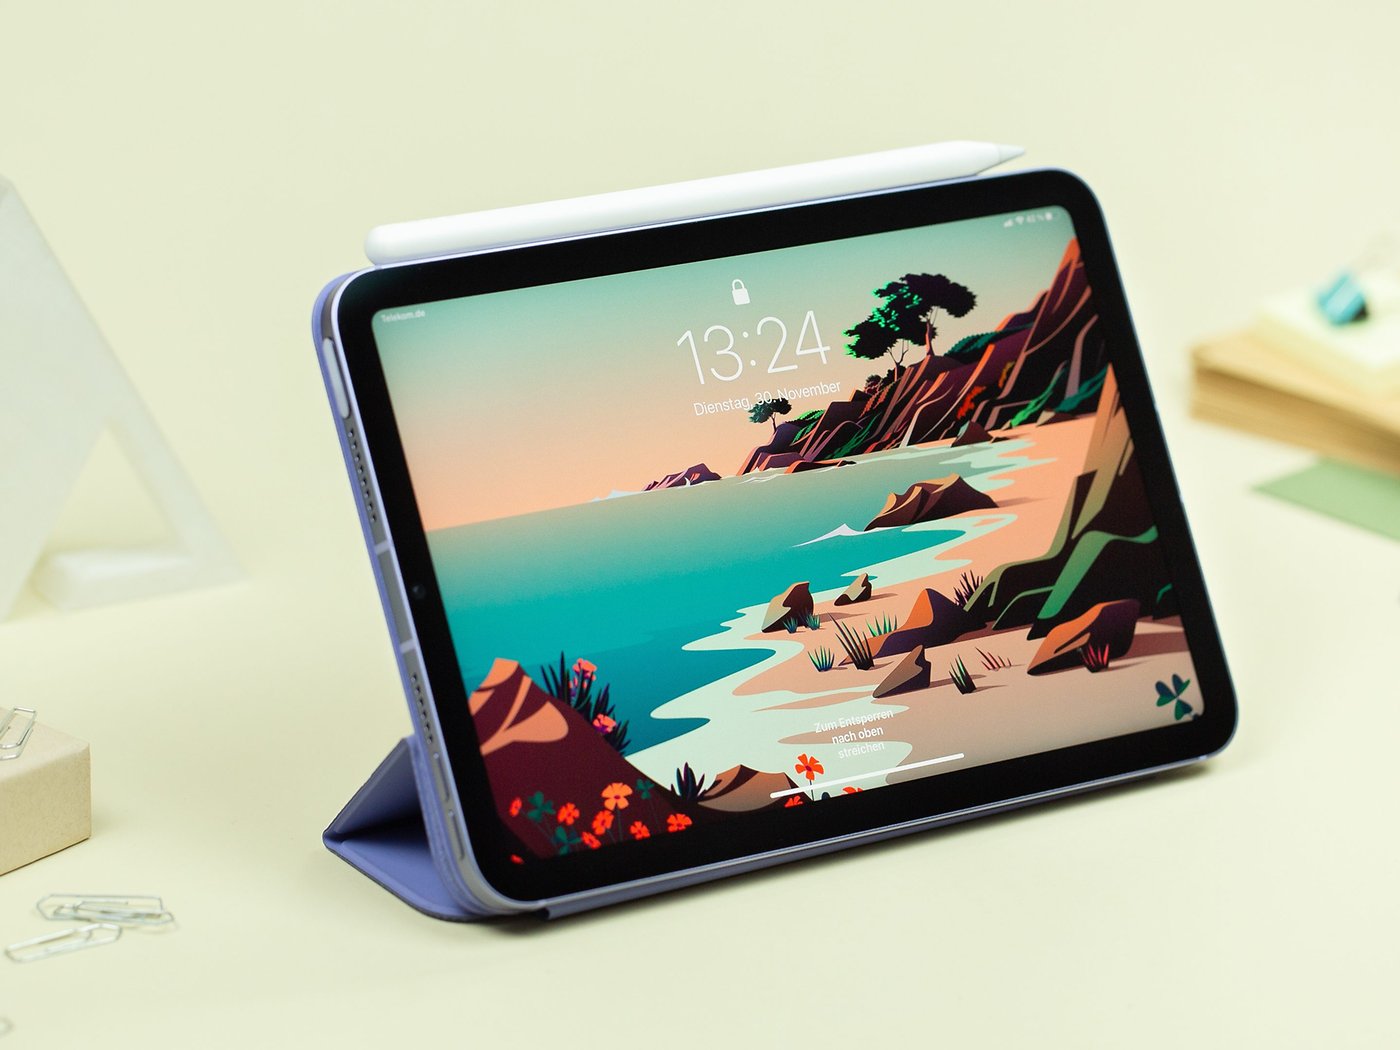 Gerüchte über Erscheinungsdatum, Preis und technische Daten des Apple iPad Mini (7. Generation).